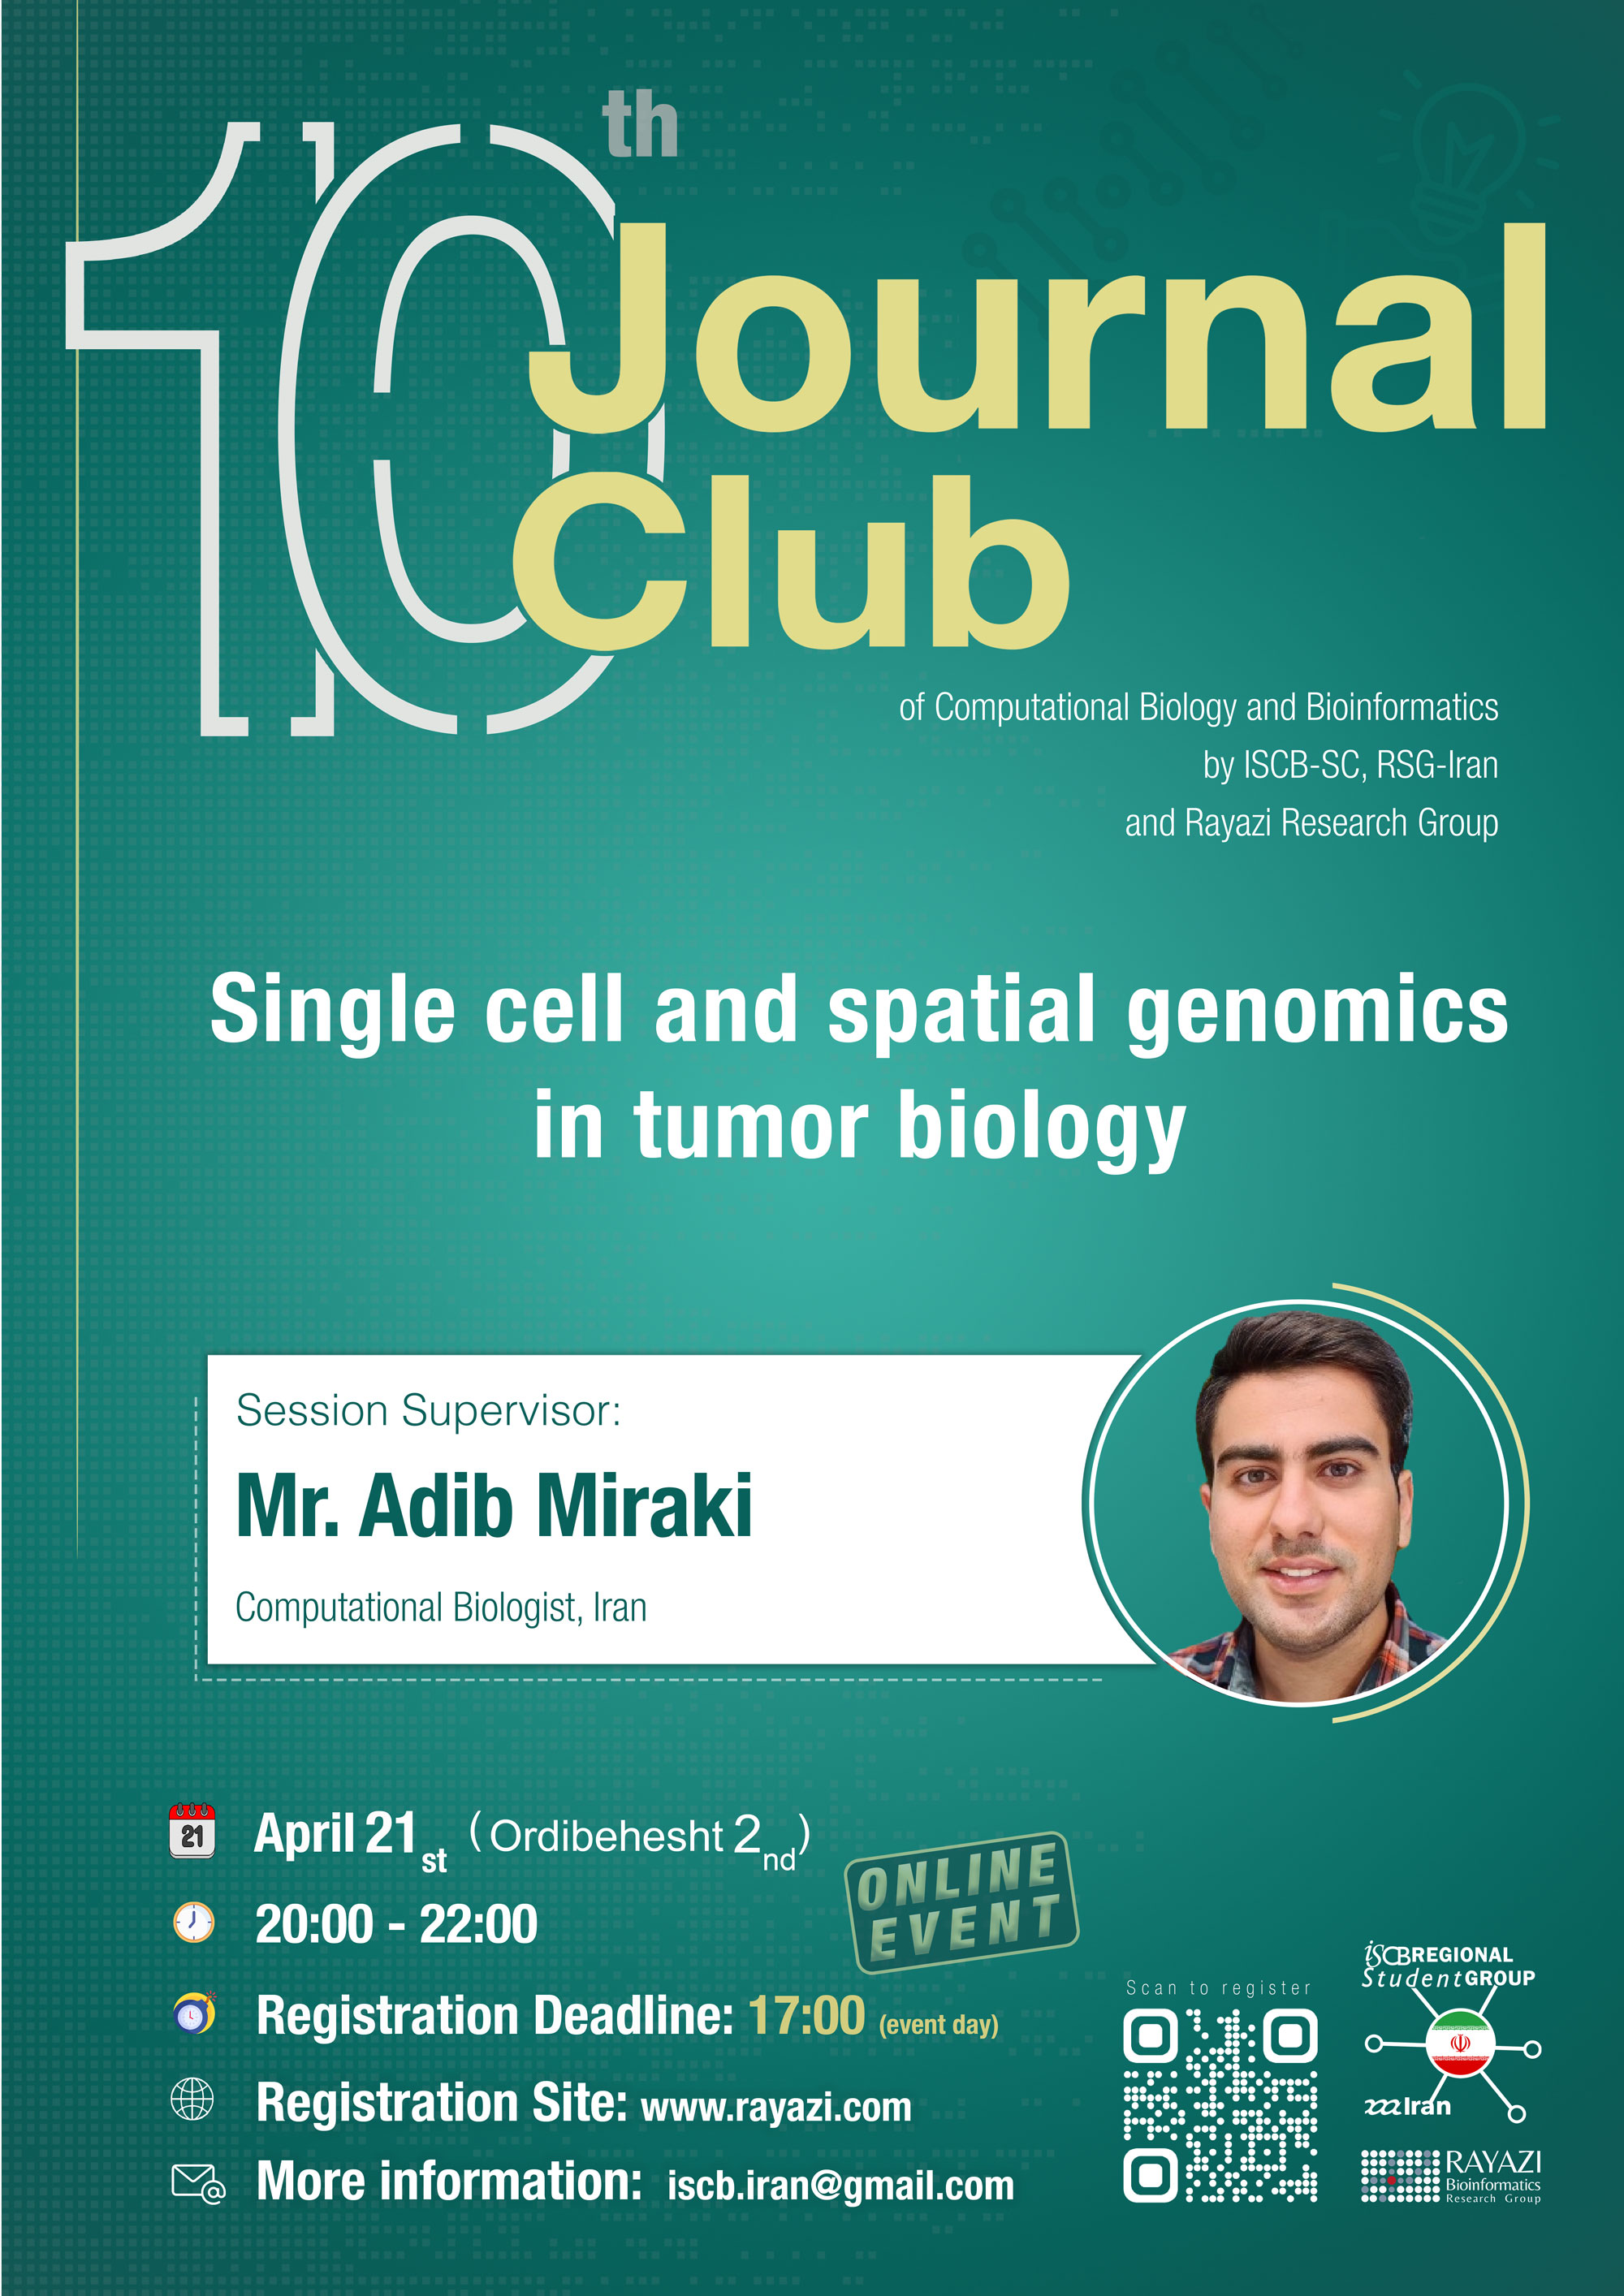 Journal Club - Mr. Adib Miraki